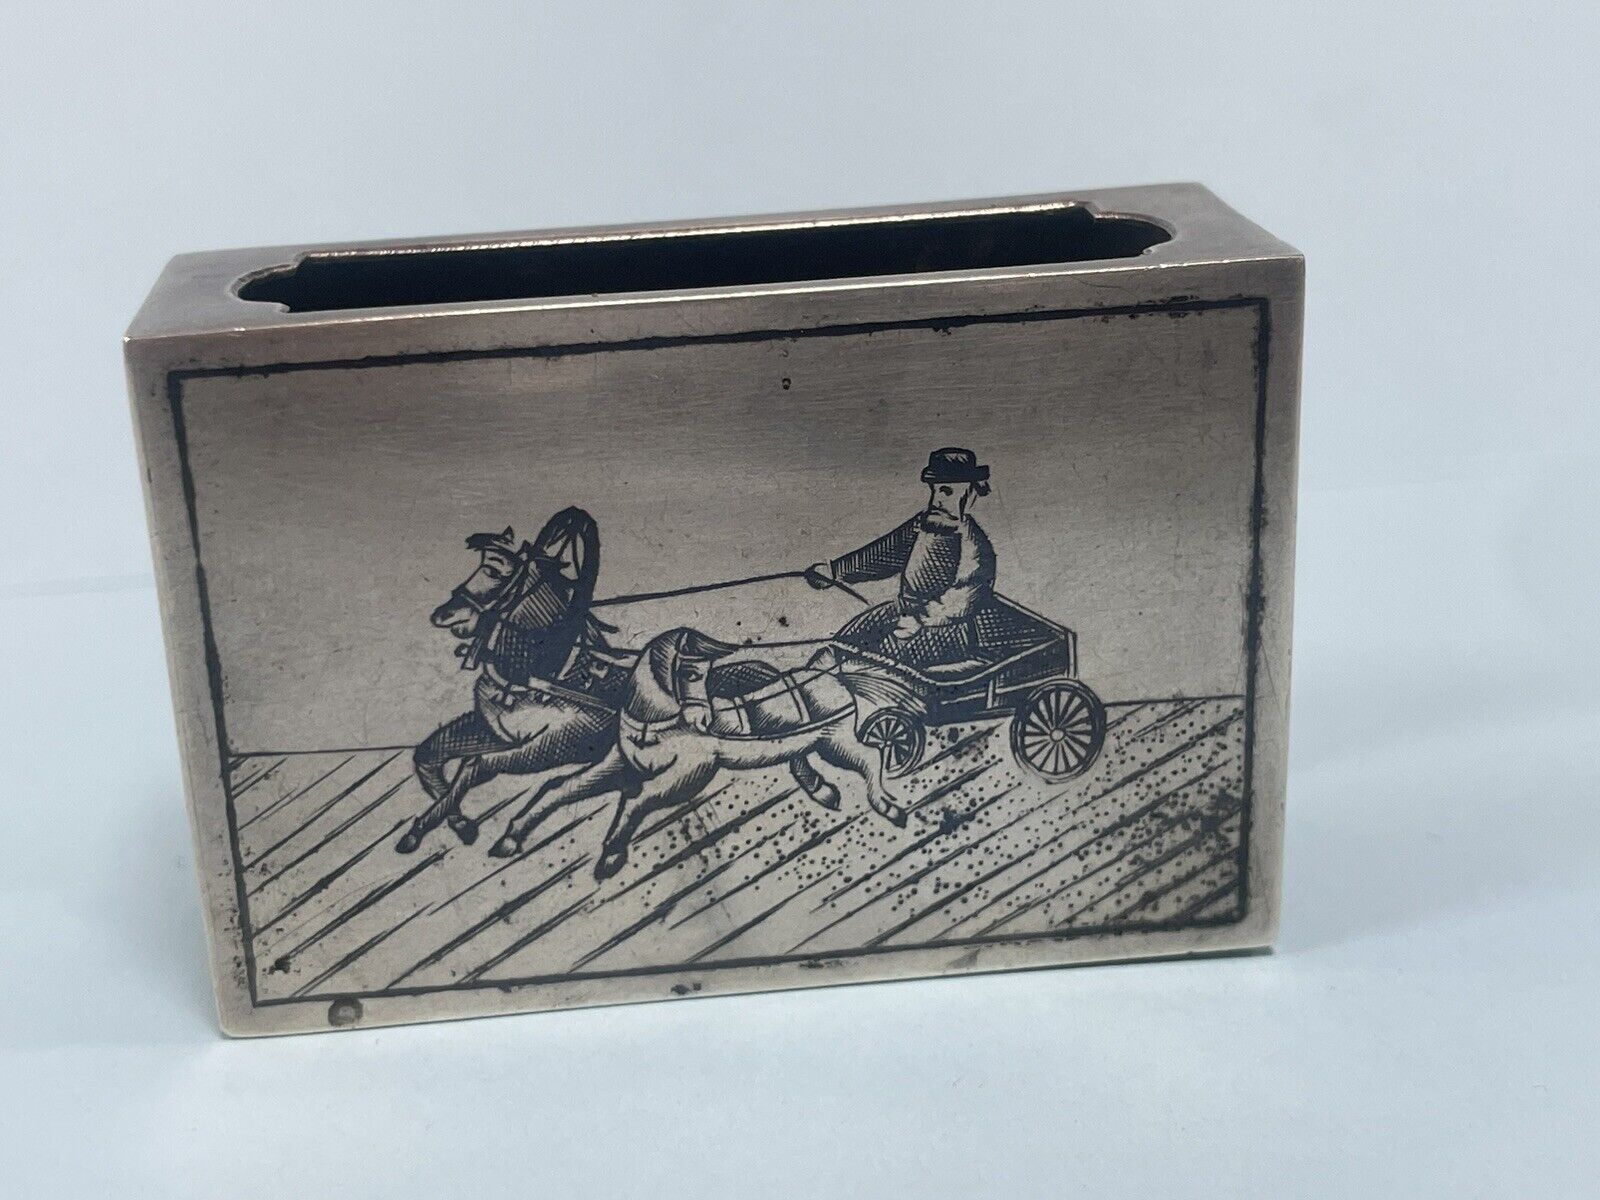 Adntique Rare 1900s Russian Imperial 875 Silver & Niello Match Holder/Box R15